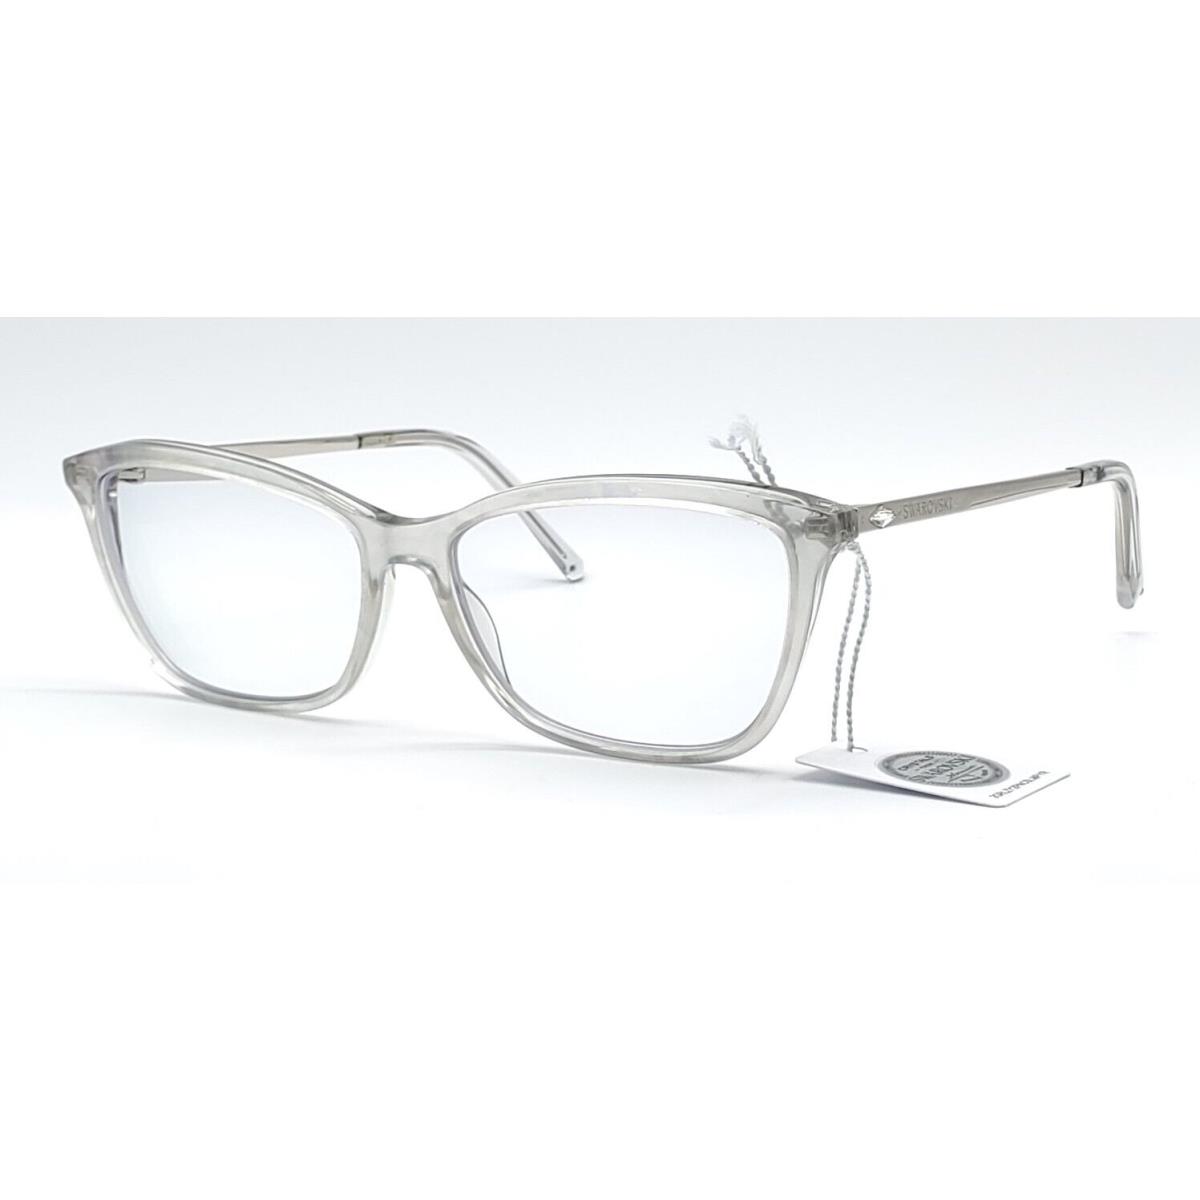 Swarovski SK5314 020 Grey Rectangular 54x14 140 Frame Only Eyeglasses